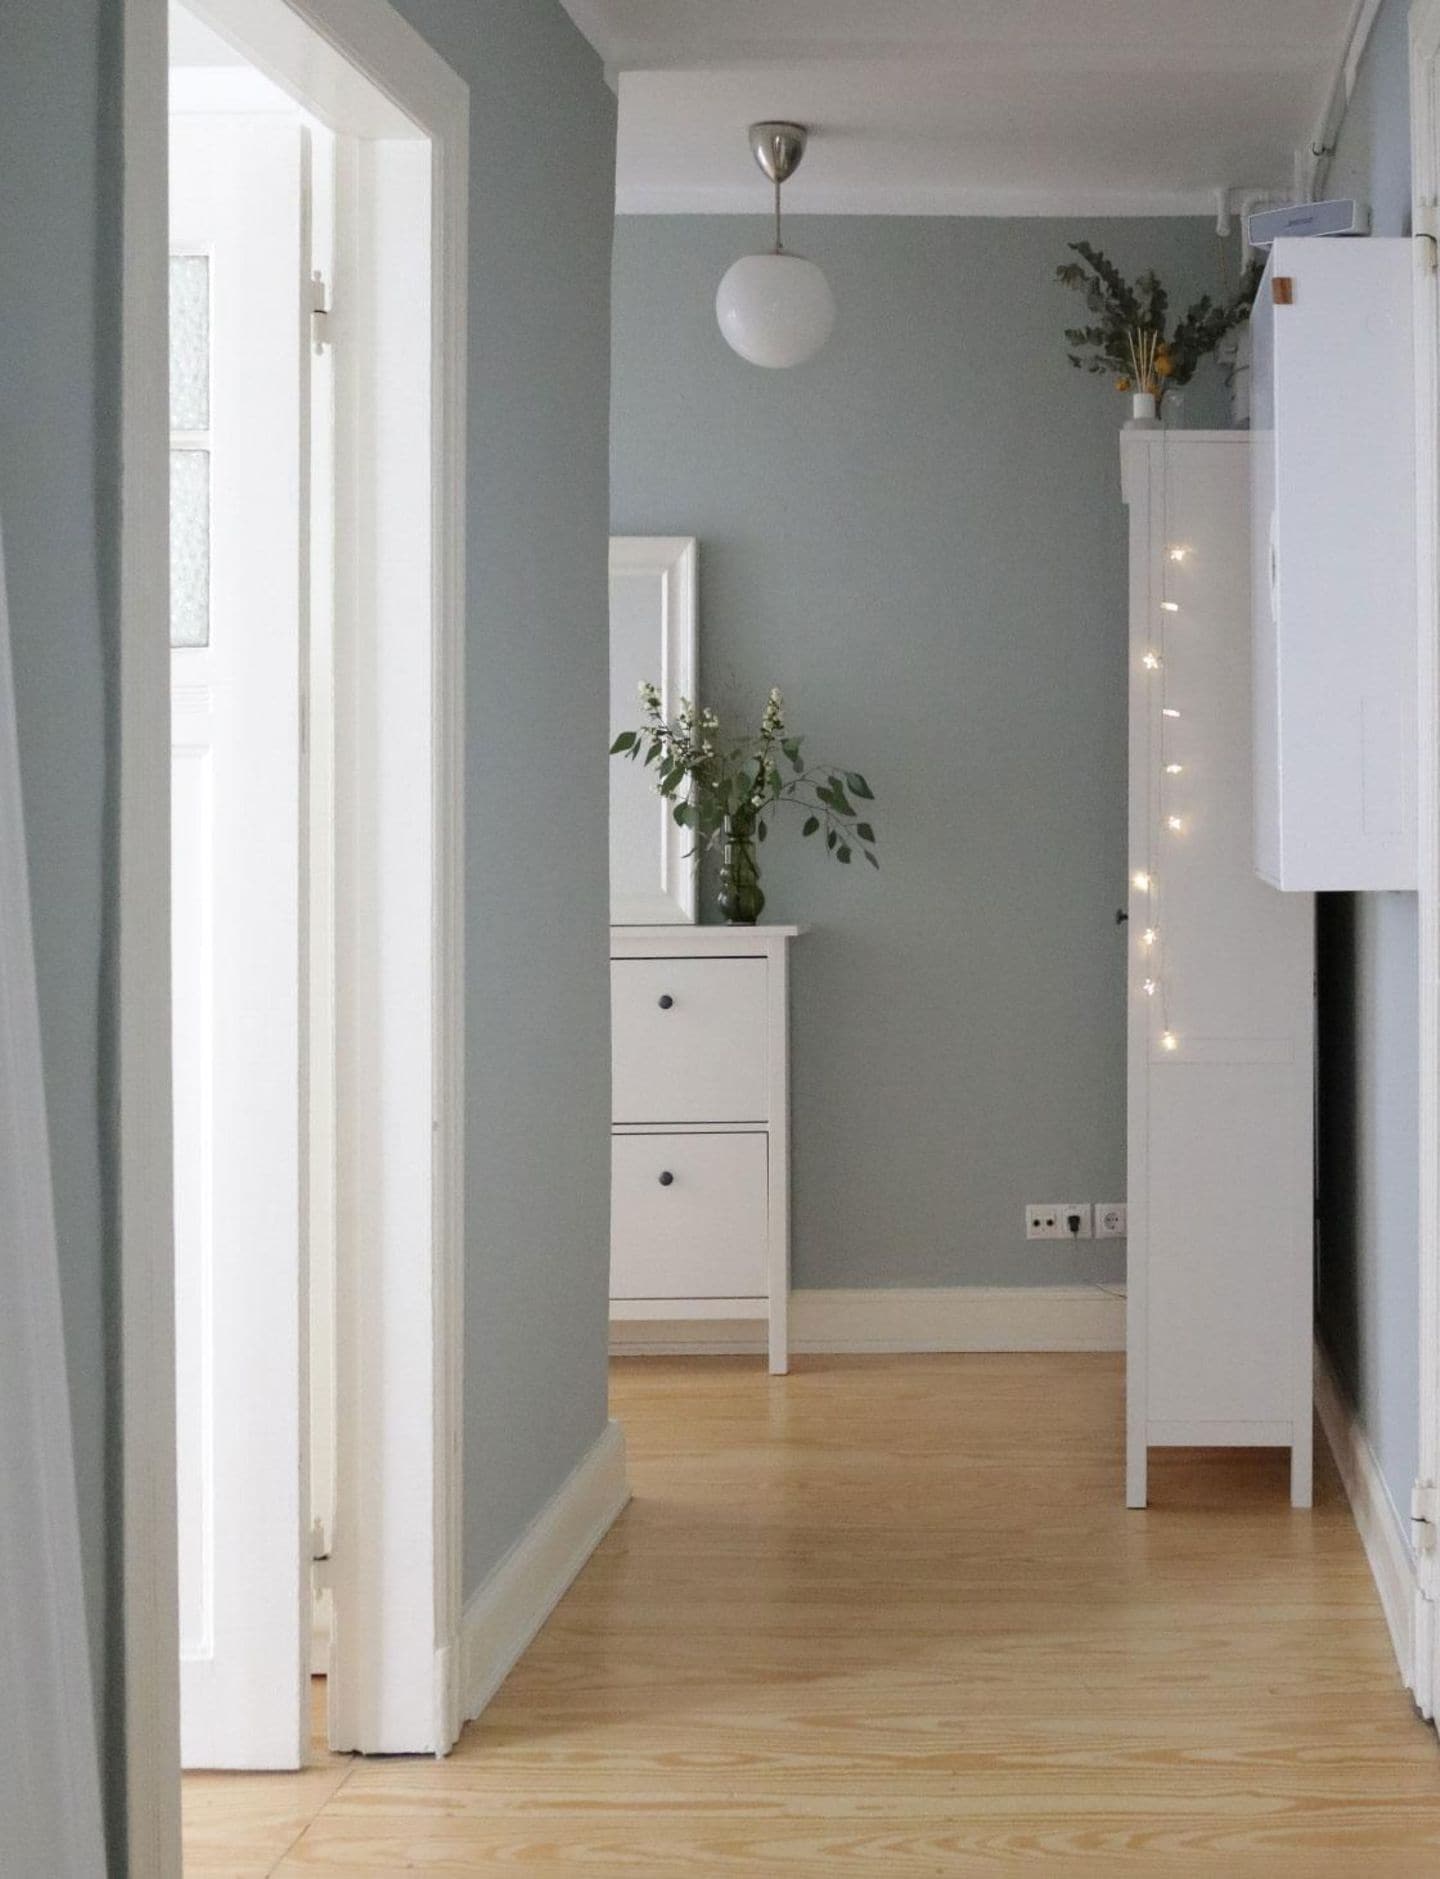 Flur mit Dielenboden, weißen Möbeln und Wänden in Jadegrün von SCHÖNER WOHNEN-Farbe